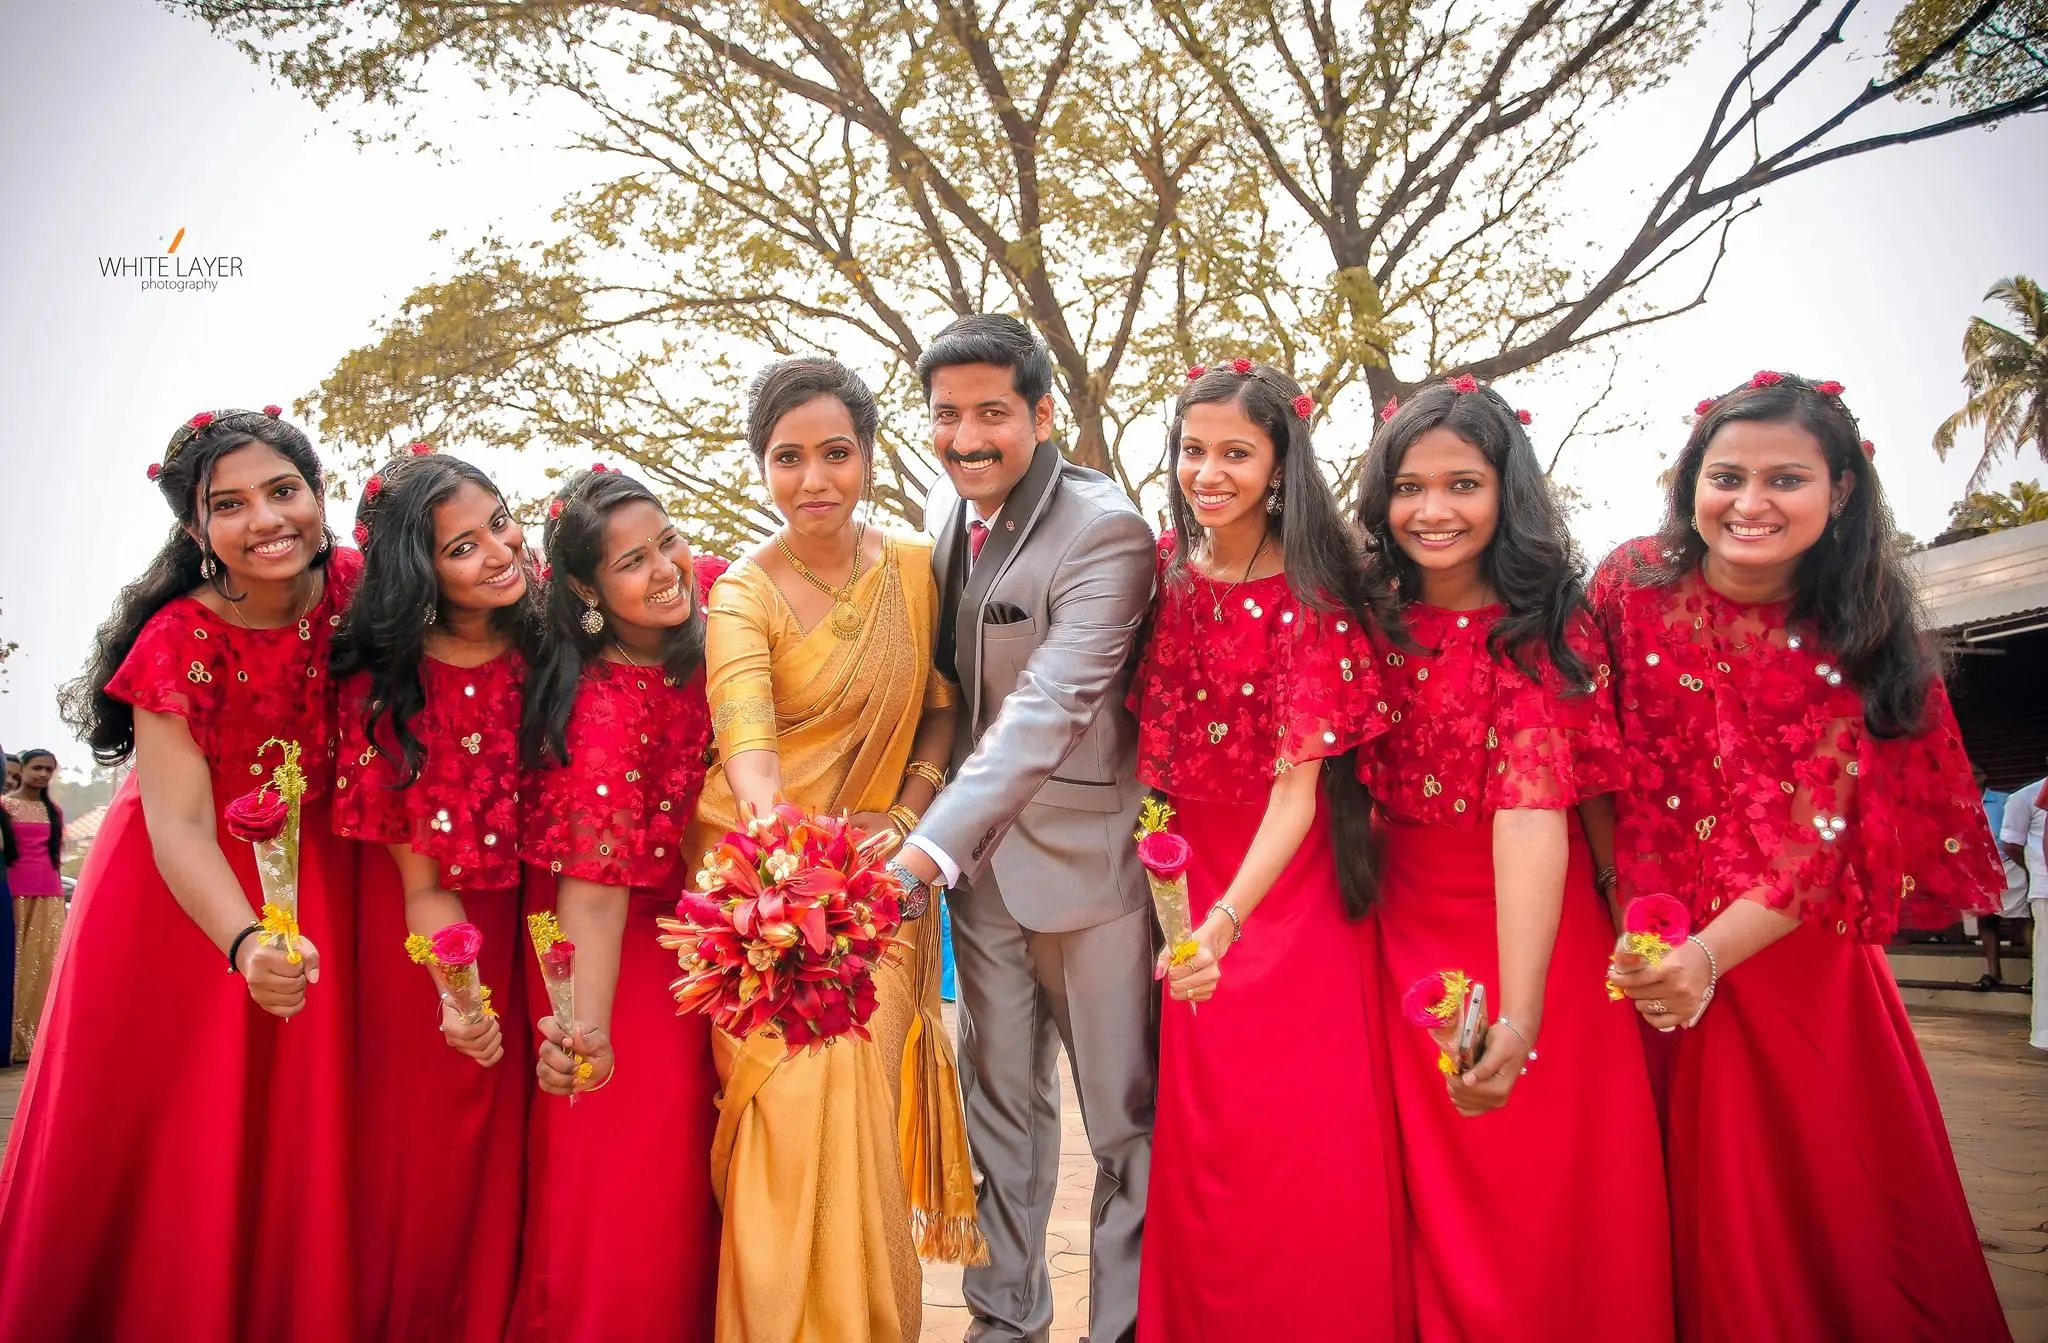 Often a bridesmaid, but never a bride.... - Kerala Bridesmaid | Facebook